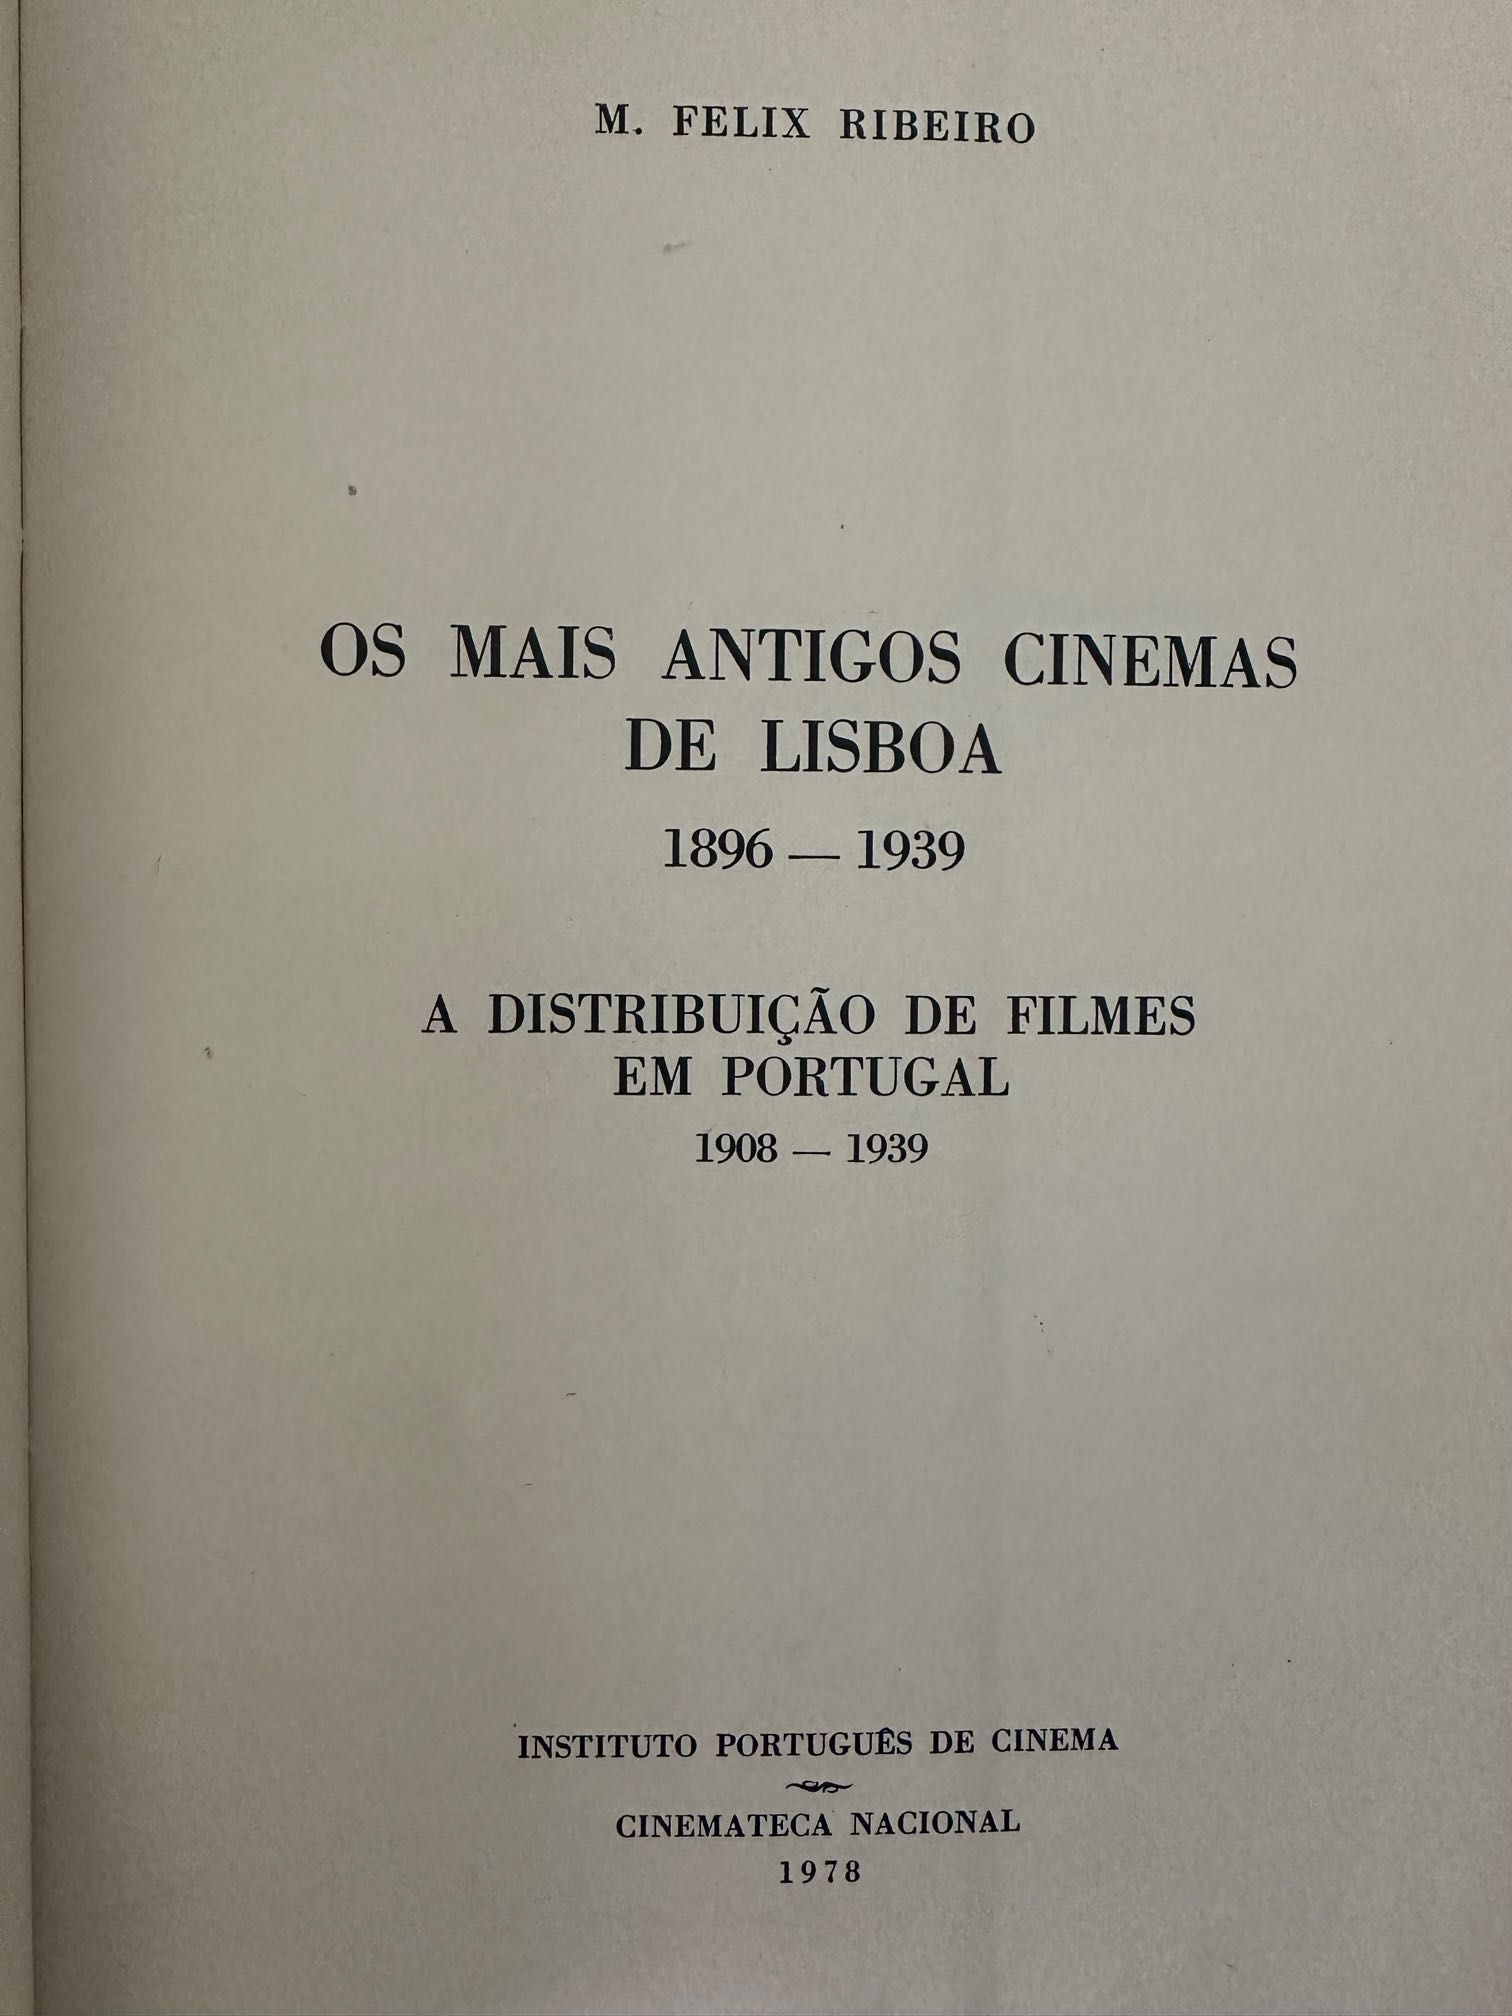 Os mais Antigos Cinemas de Lisboa. 1898/1939 - Cinemateca - 1978